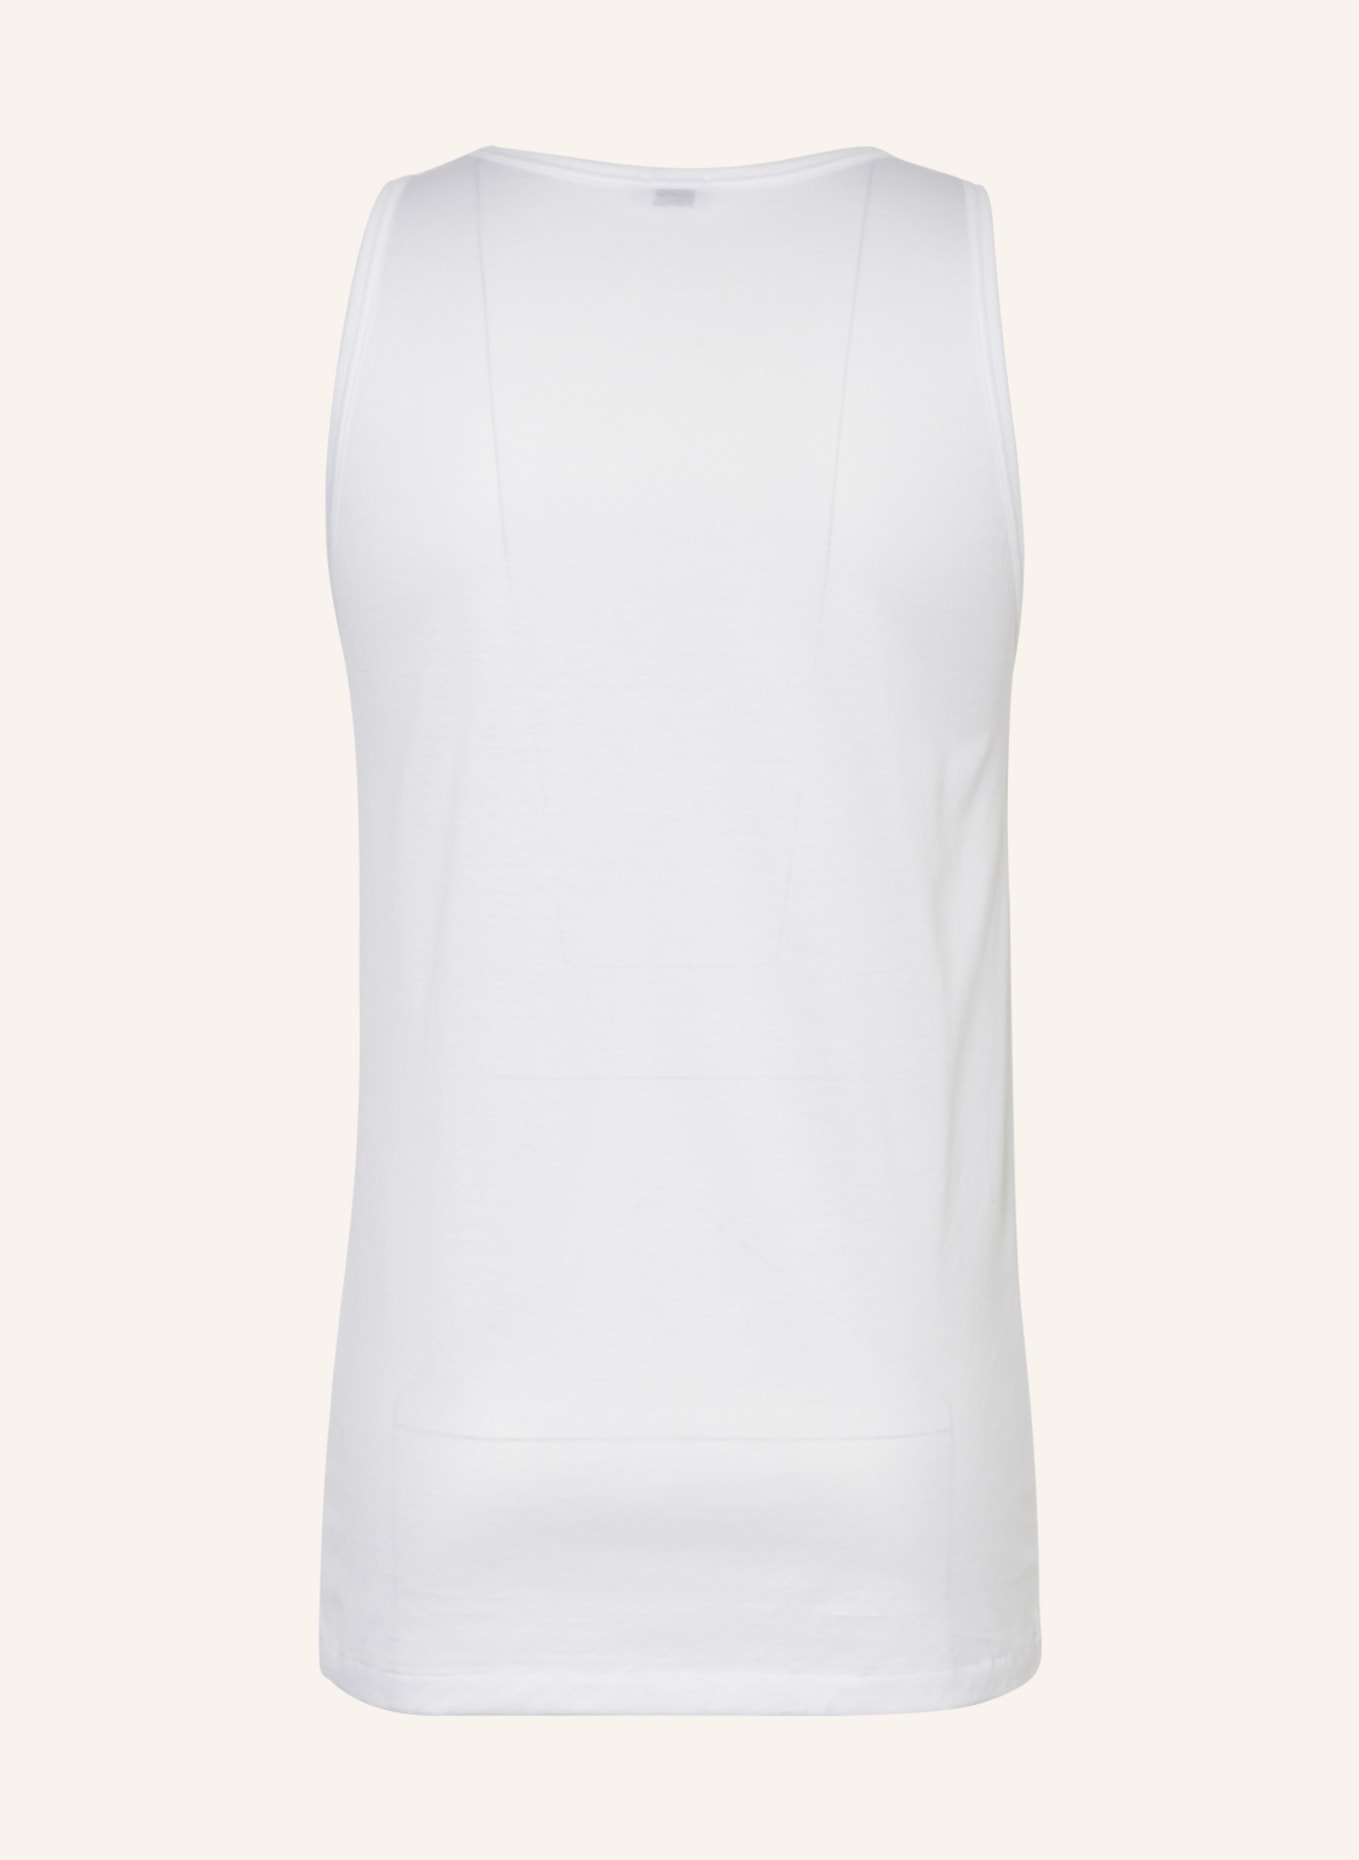 zimmerli Undershirt ROYAL CLASSIC, Color: WHITE (Image 2)